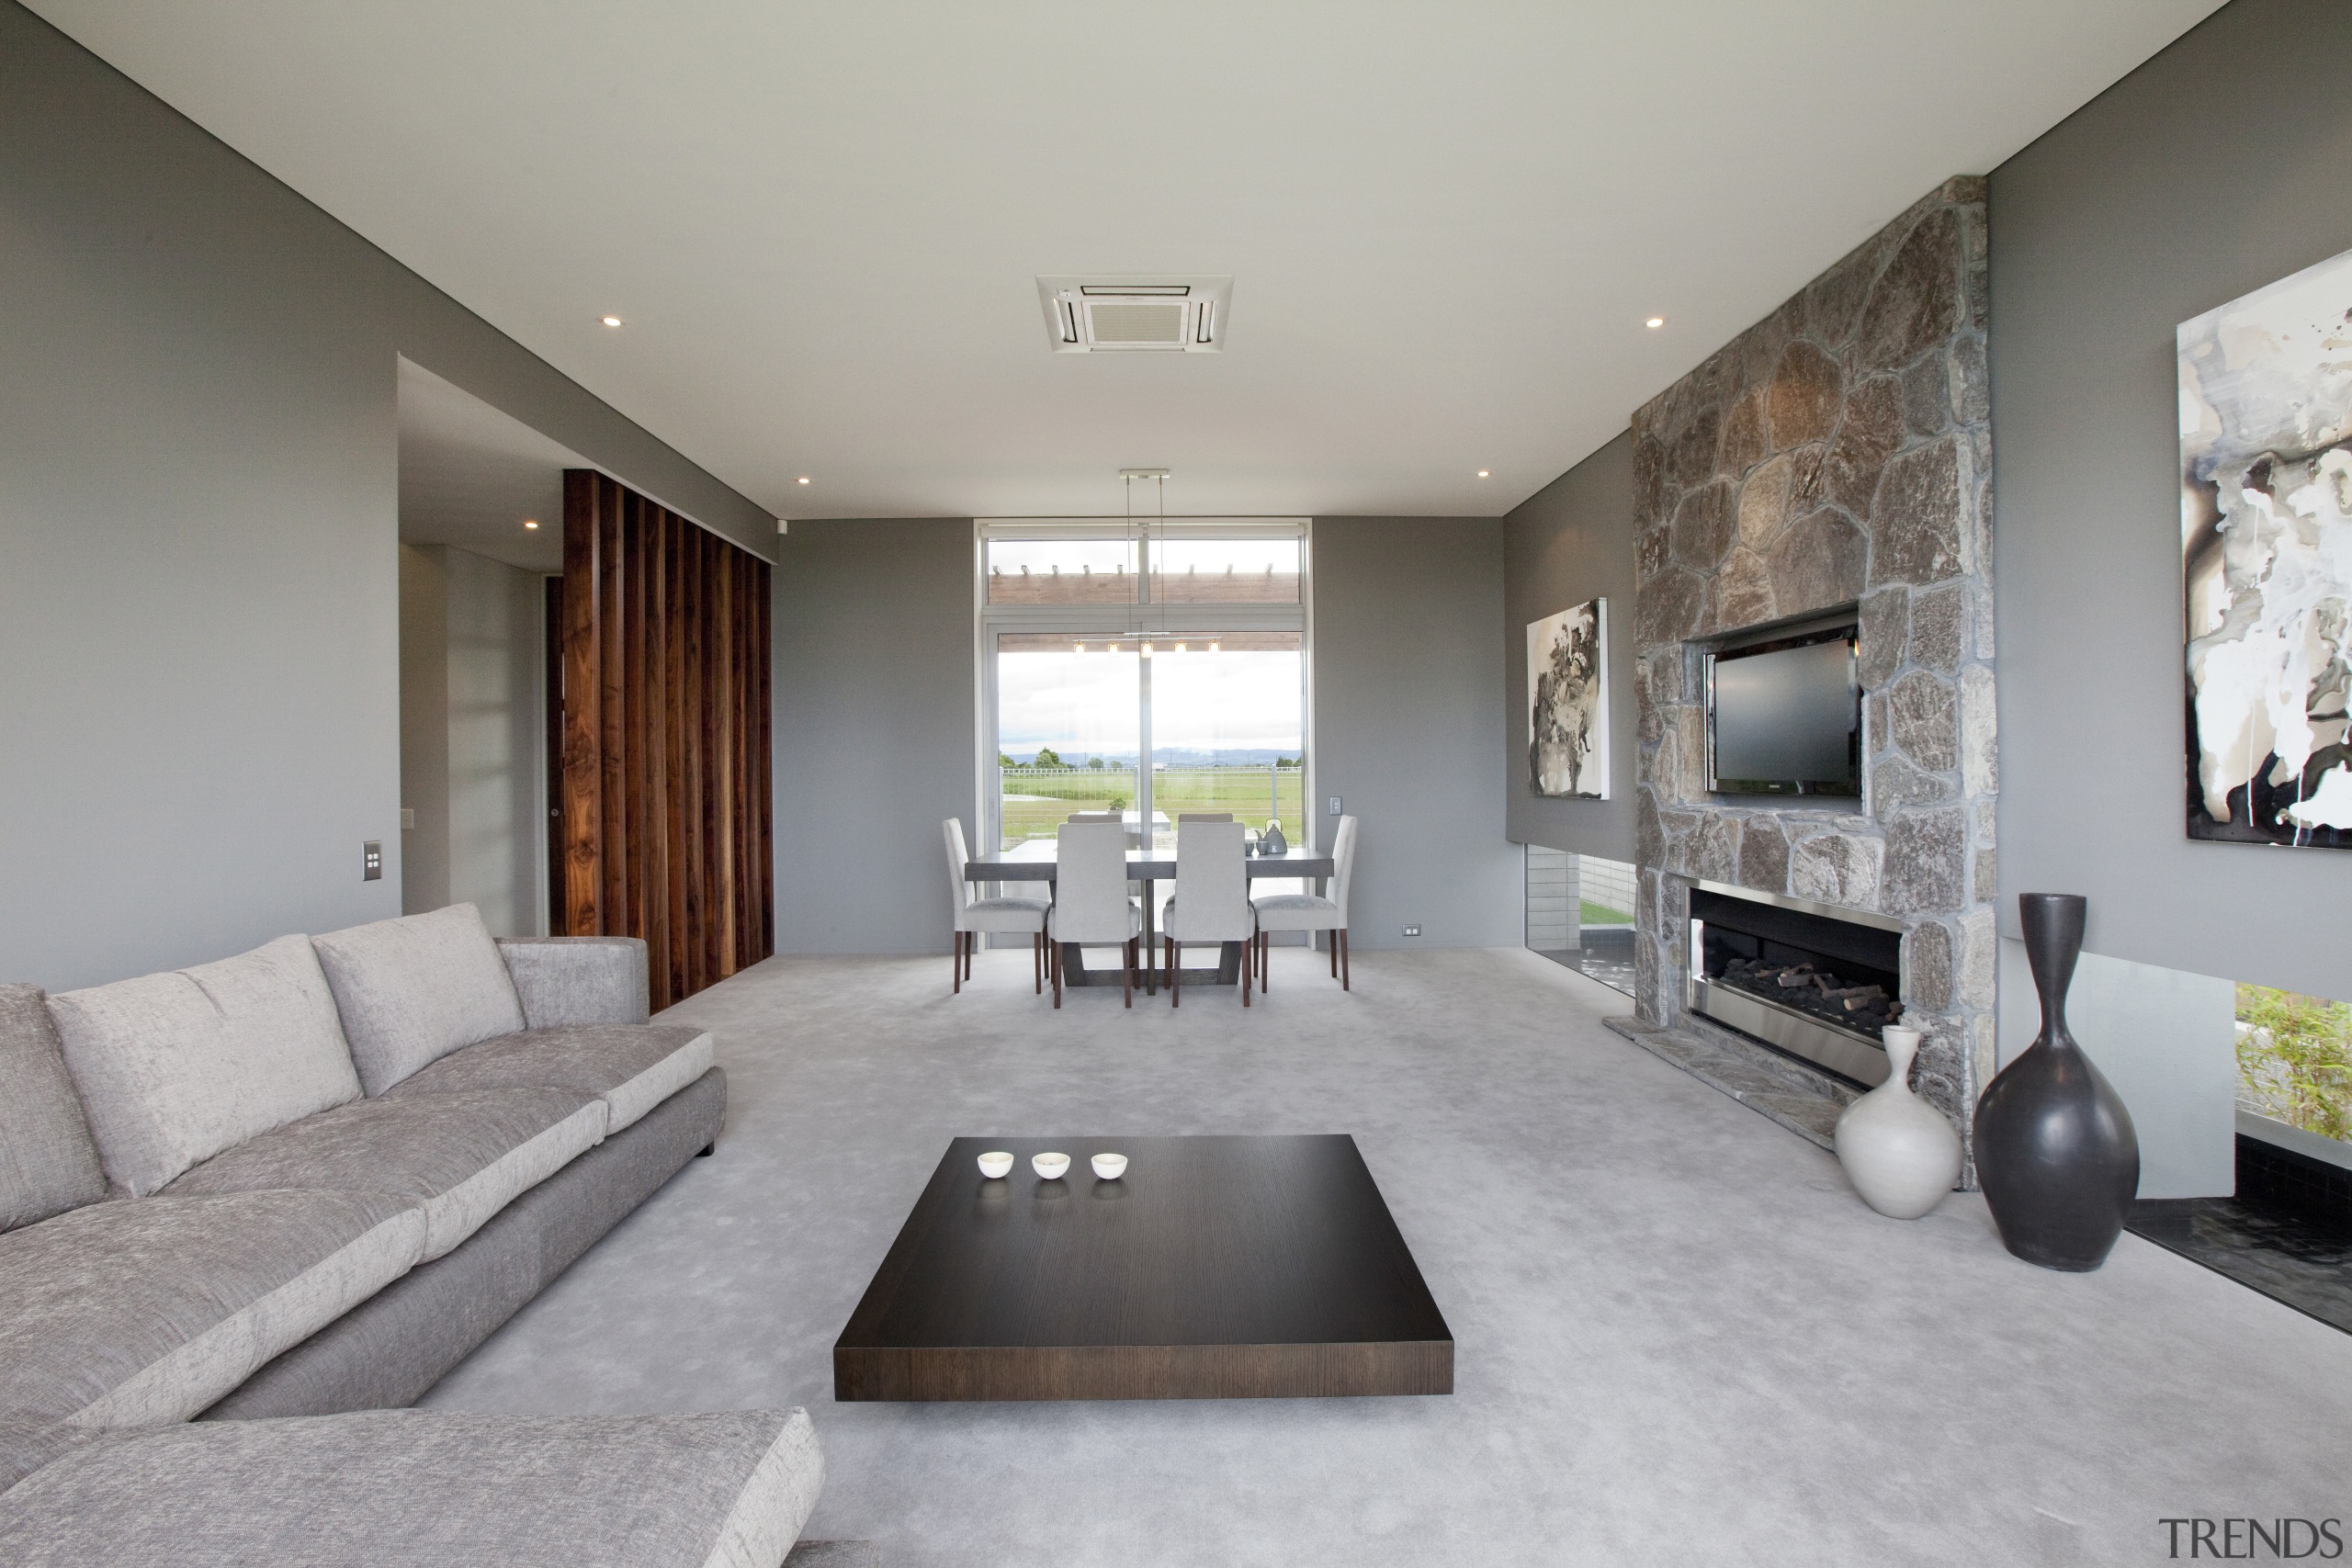 Contemporary home by Coast Papamoa - Contemporary home ceiling, floor, interior design, living room, room, gray